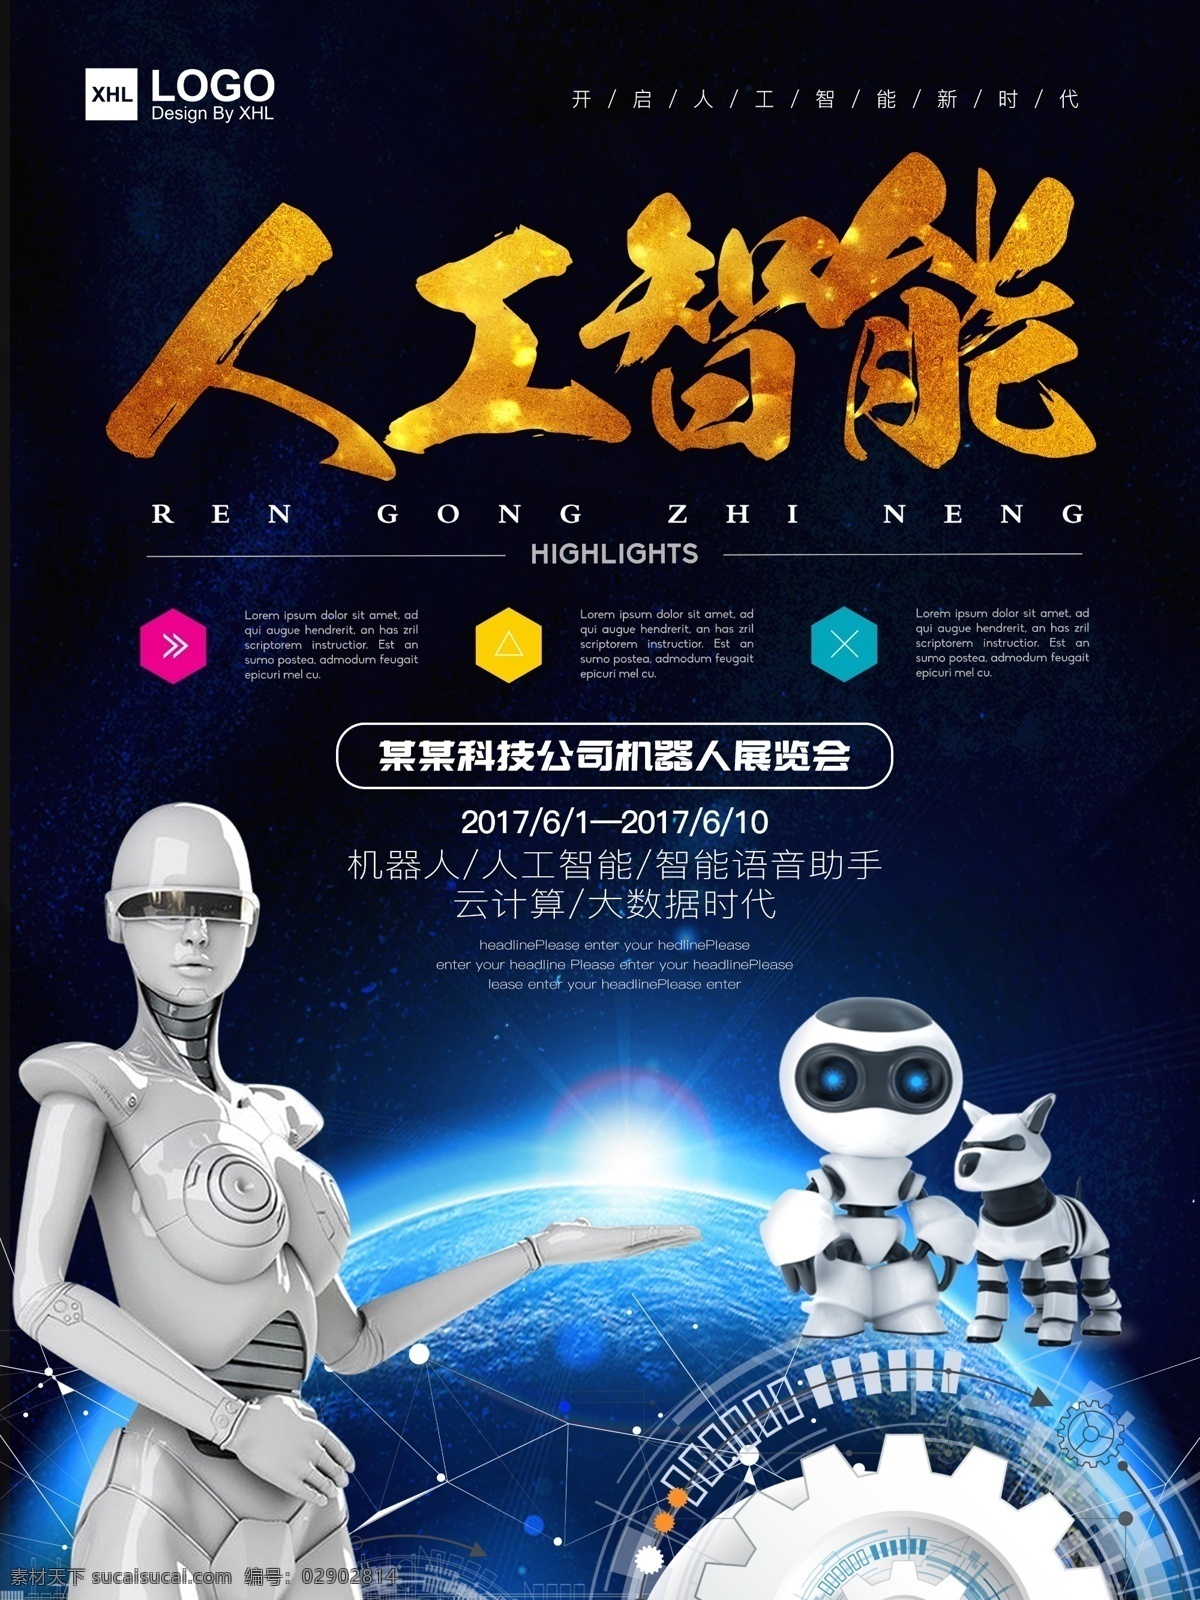 科技 公司 人工智能 机器人 展览会 创意 海报 智能机器人 机器人展板 机器人海报 电路板 人工智能化 现代科技 虚拟现实 vr体验 机器人展馆 高科技 机器人时代